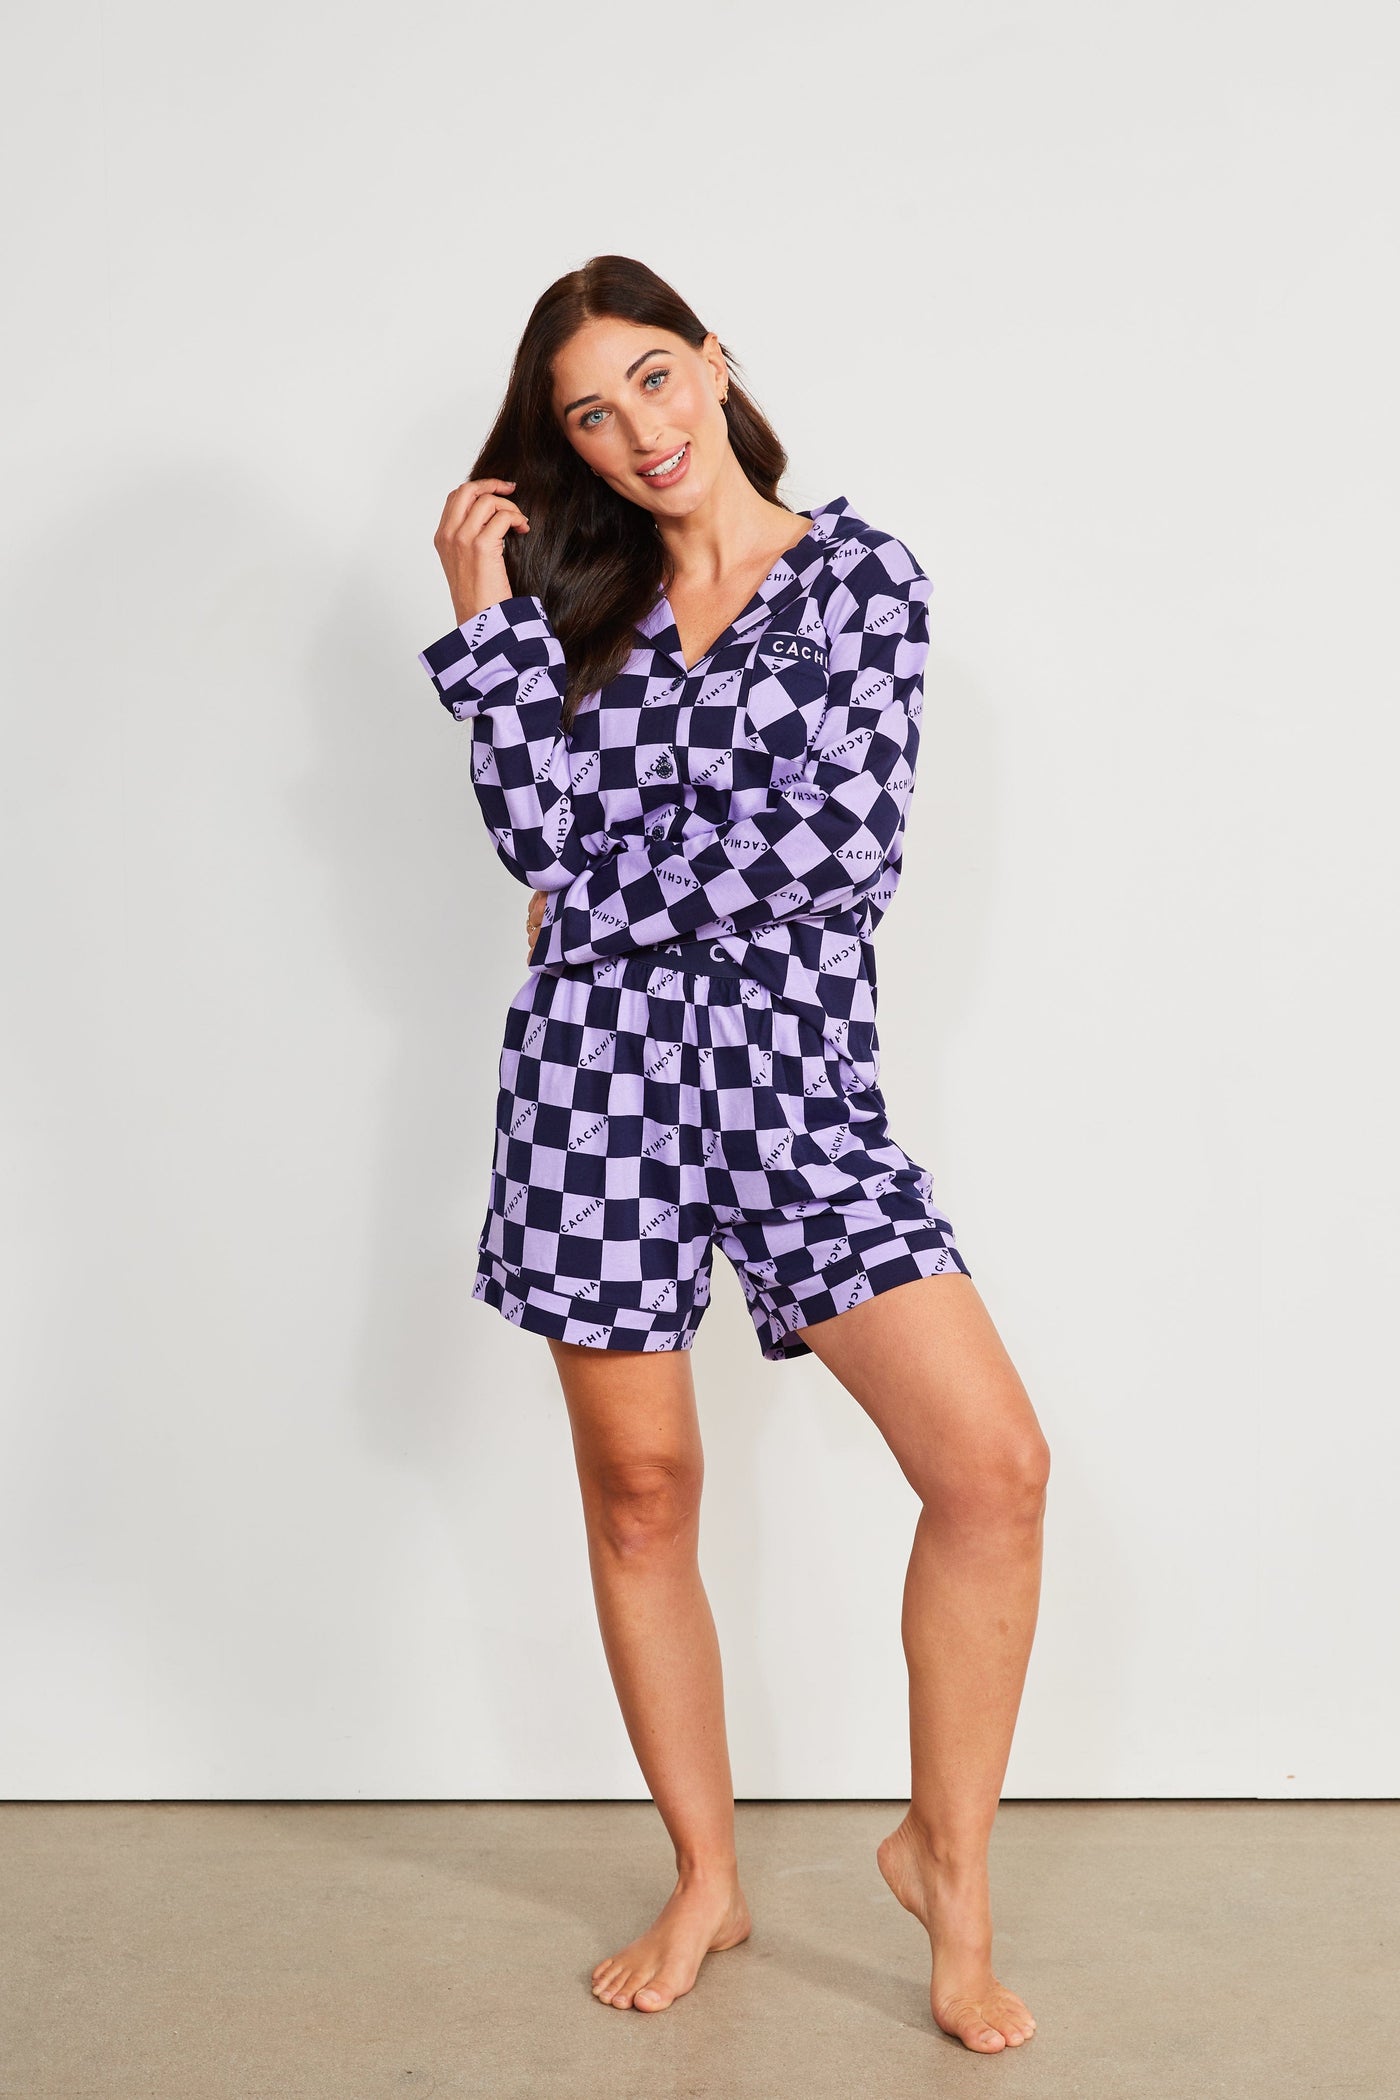 Cachia Amy Pajamas